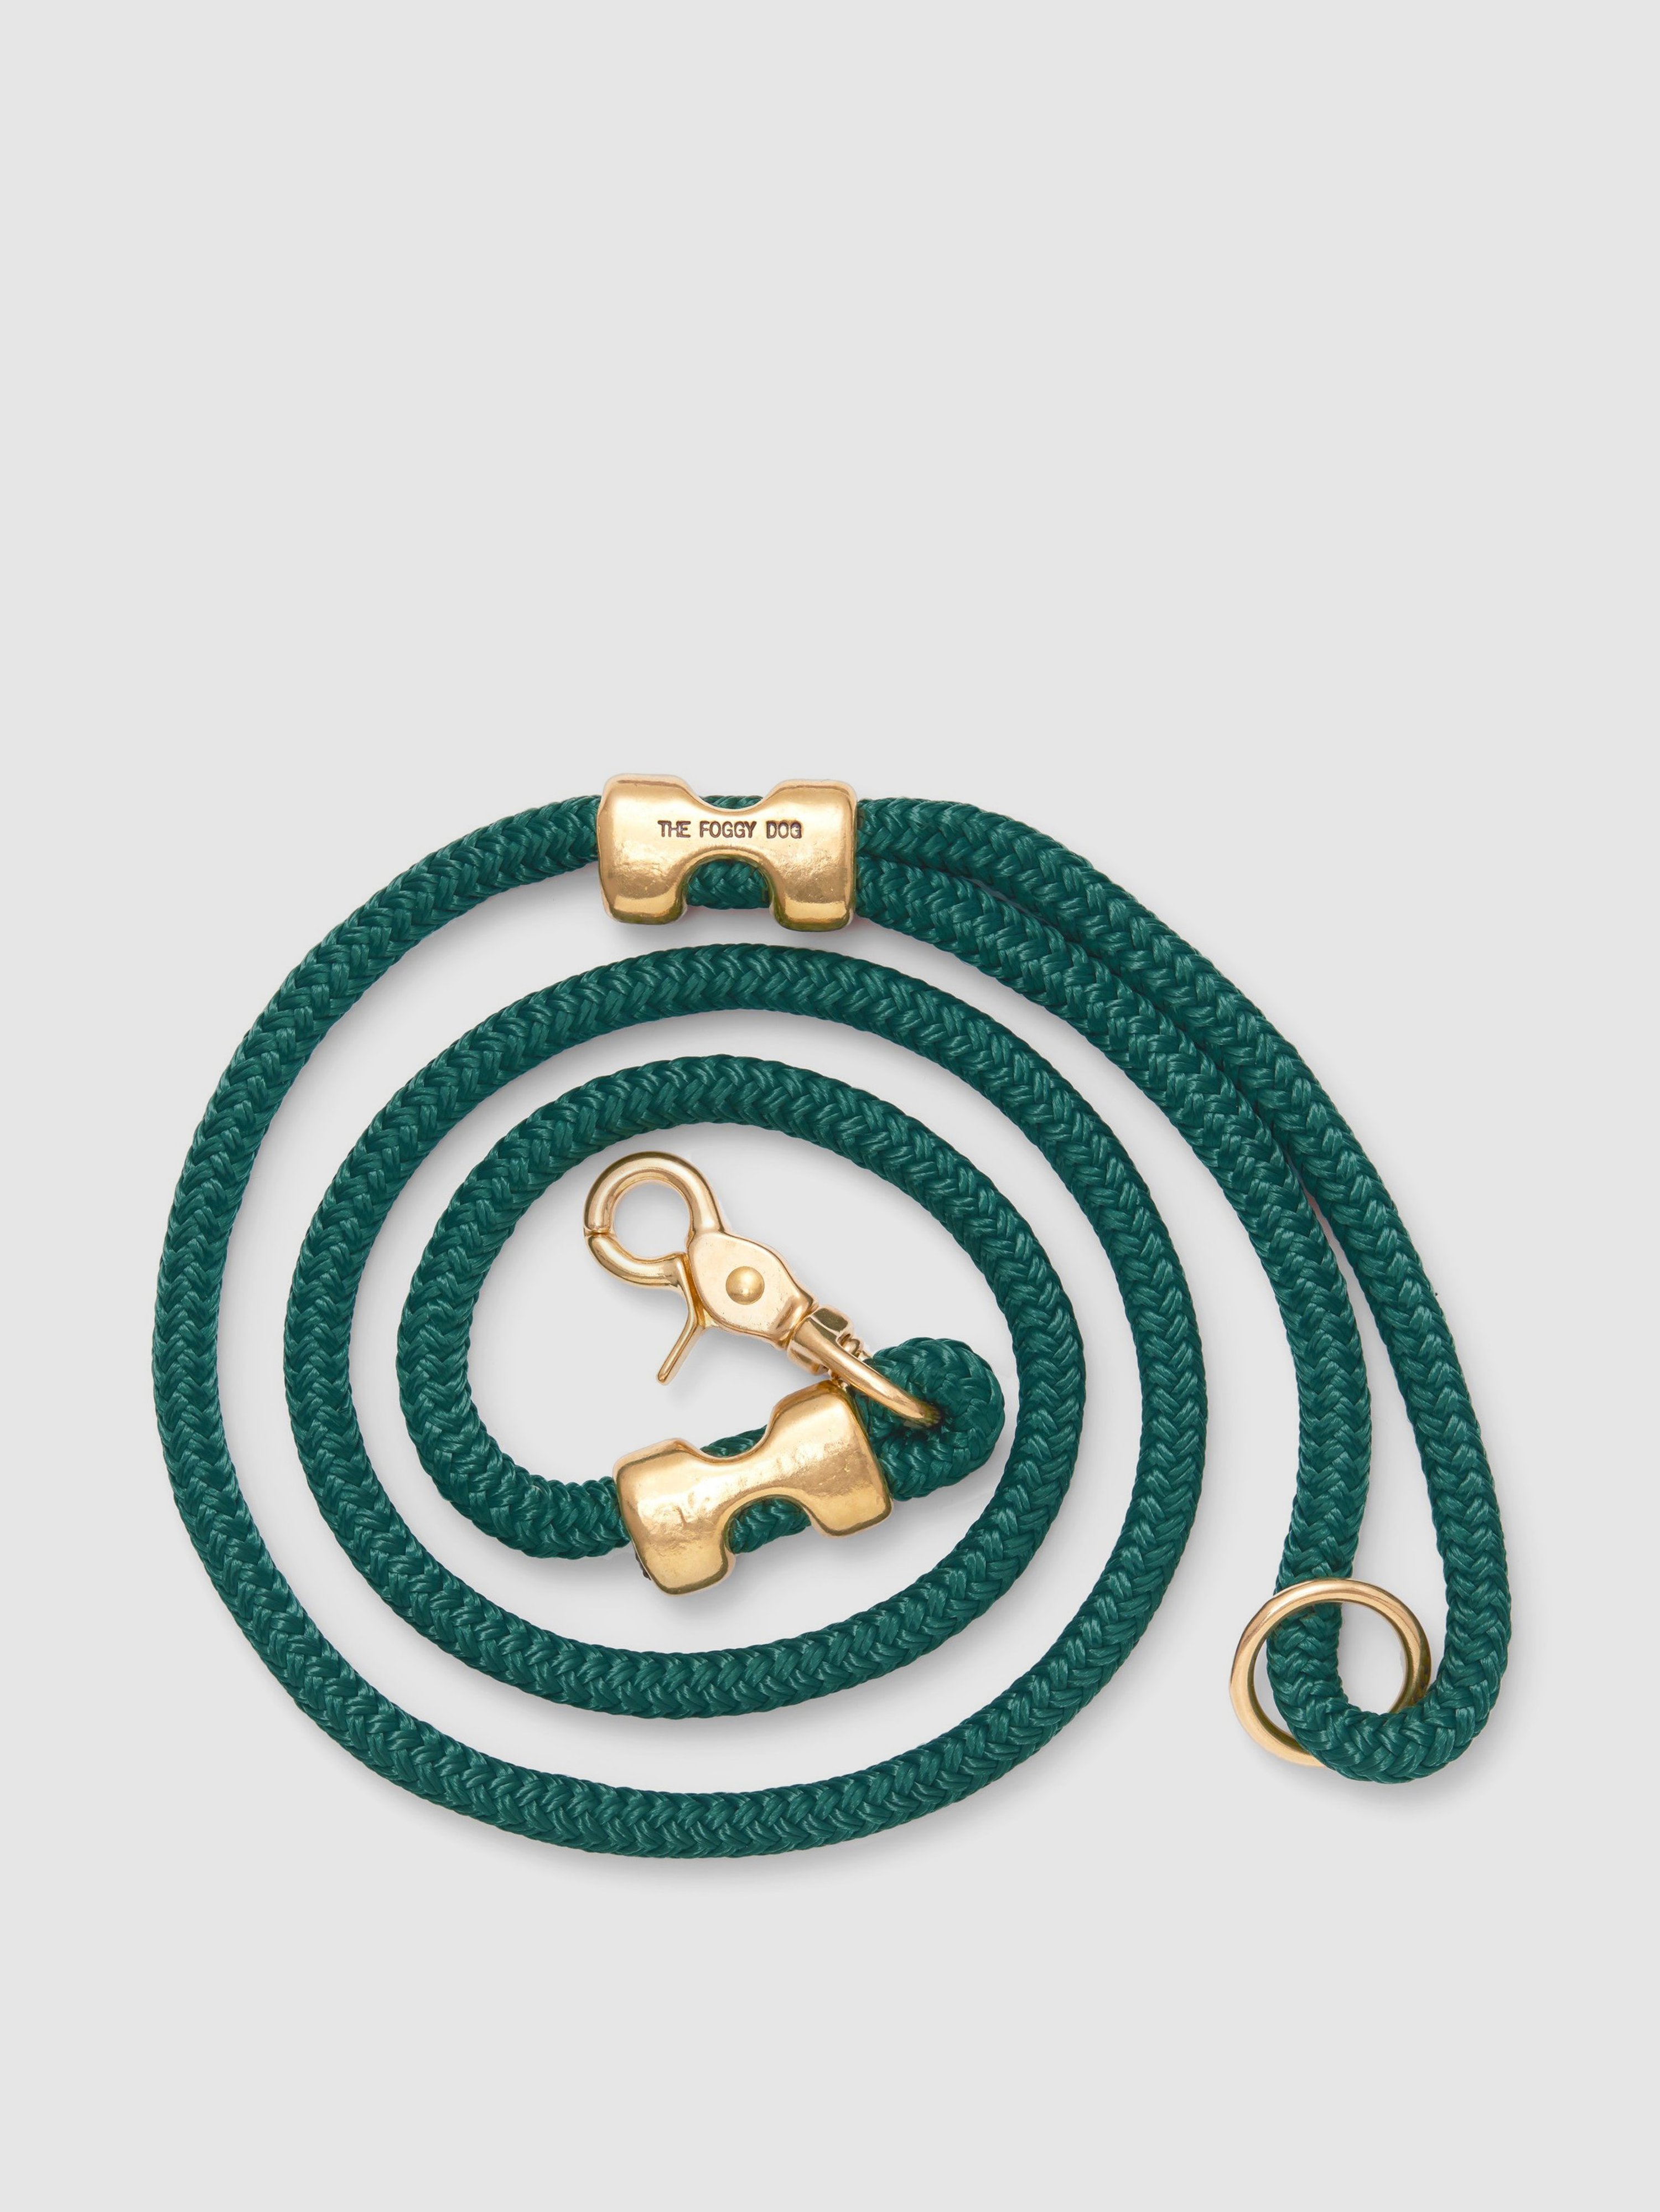 The Foggy Dog Evergreen Marine Rope Dog Leash In Green